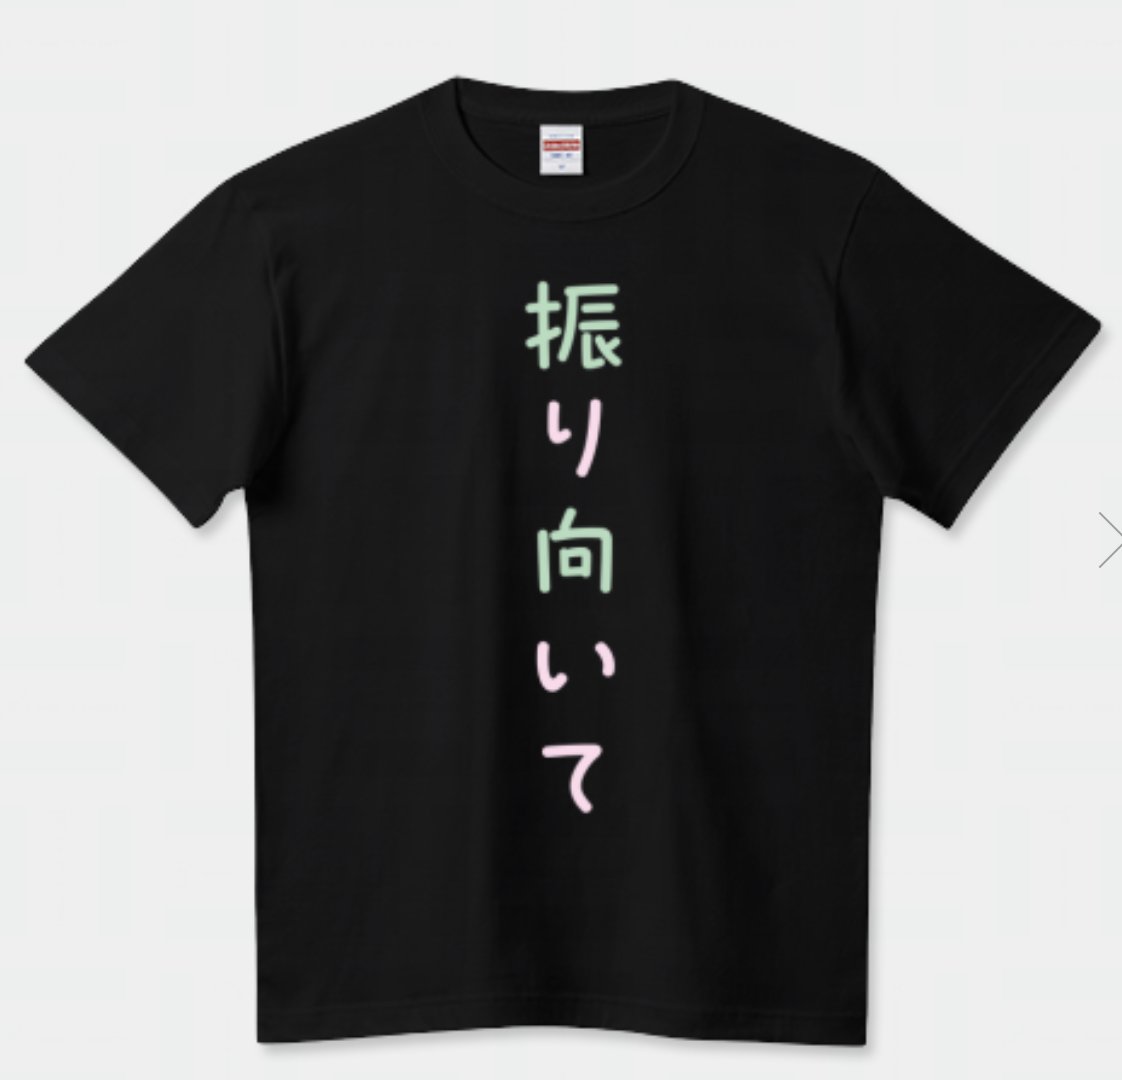 推しの写真集が発売され
タイトルをサイリウムカラーにしてみました
街の中でこのTシャツ着てたら周りのリアクションどないなるかなーと思いましたｗ

振り向いてTシャツ(パールグリーン、サクラピンクver)（Tシャツ） ttrinity.jp/product/260581… 

#振り向いて